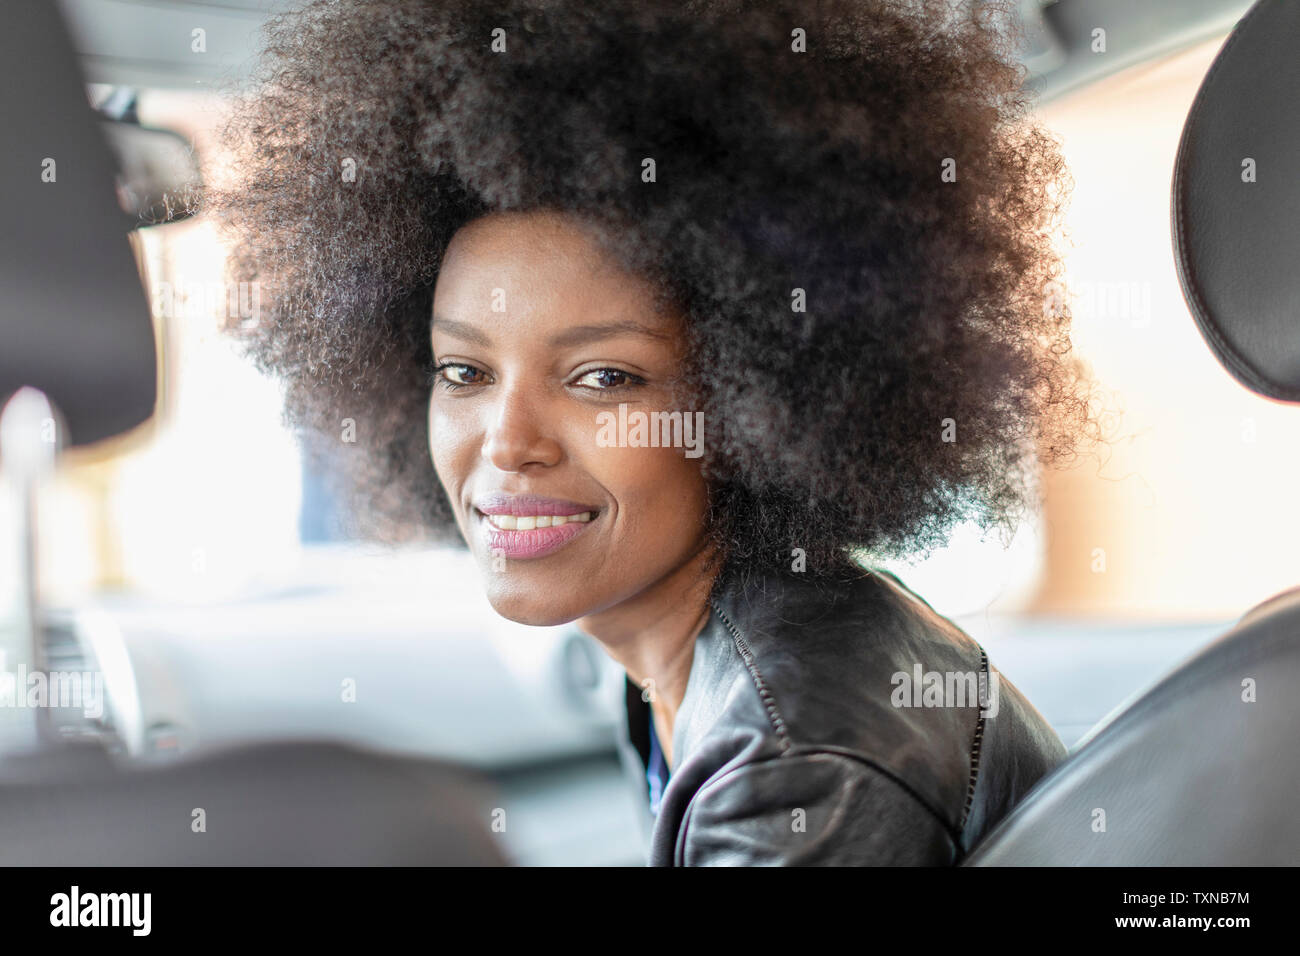 Felice giovane donna con capelli afro in auto sedile passeggero, ritratto Foto Stock